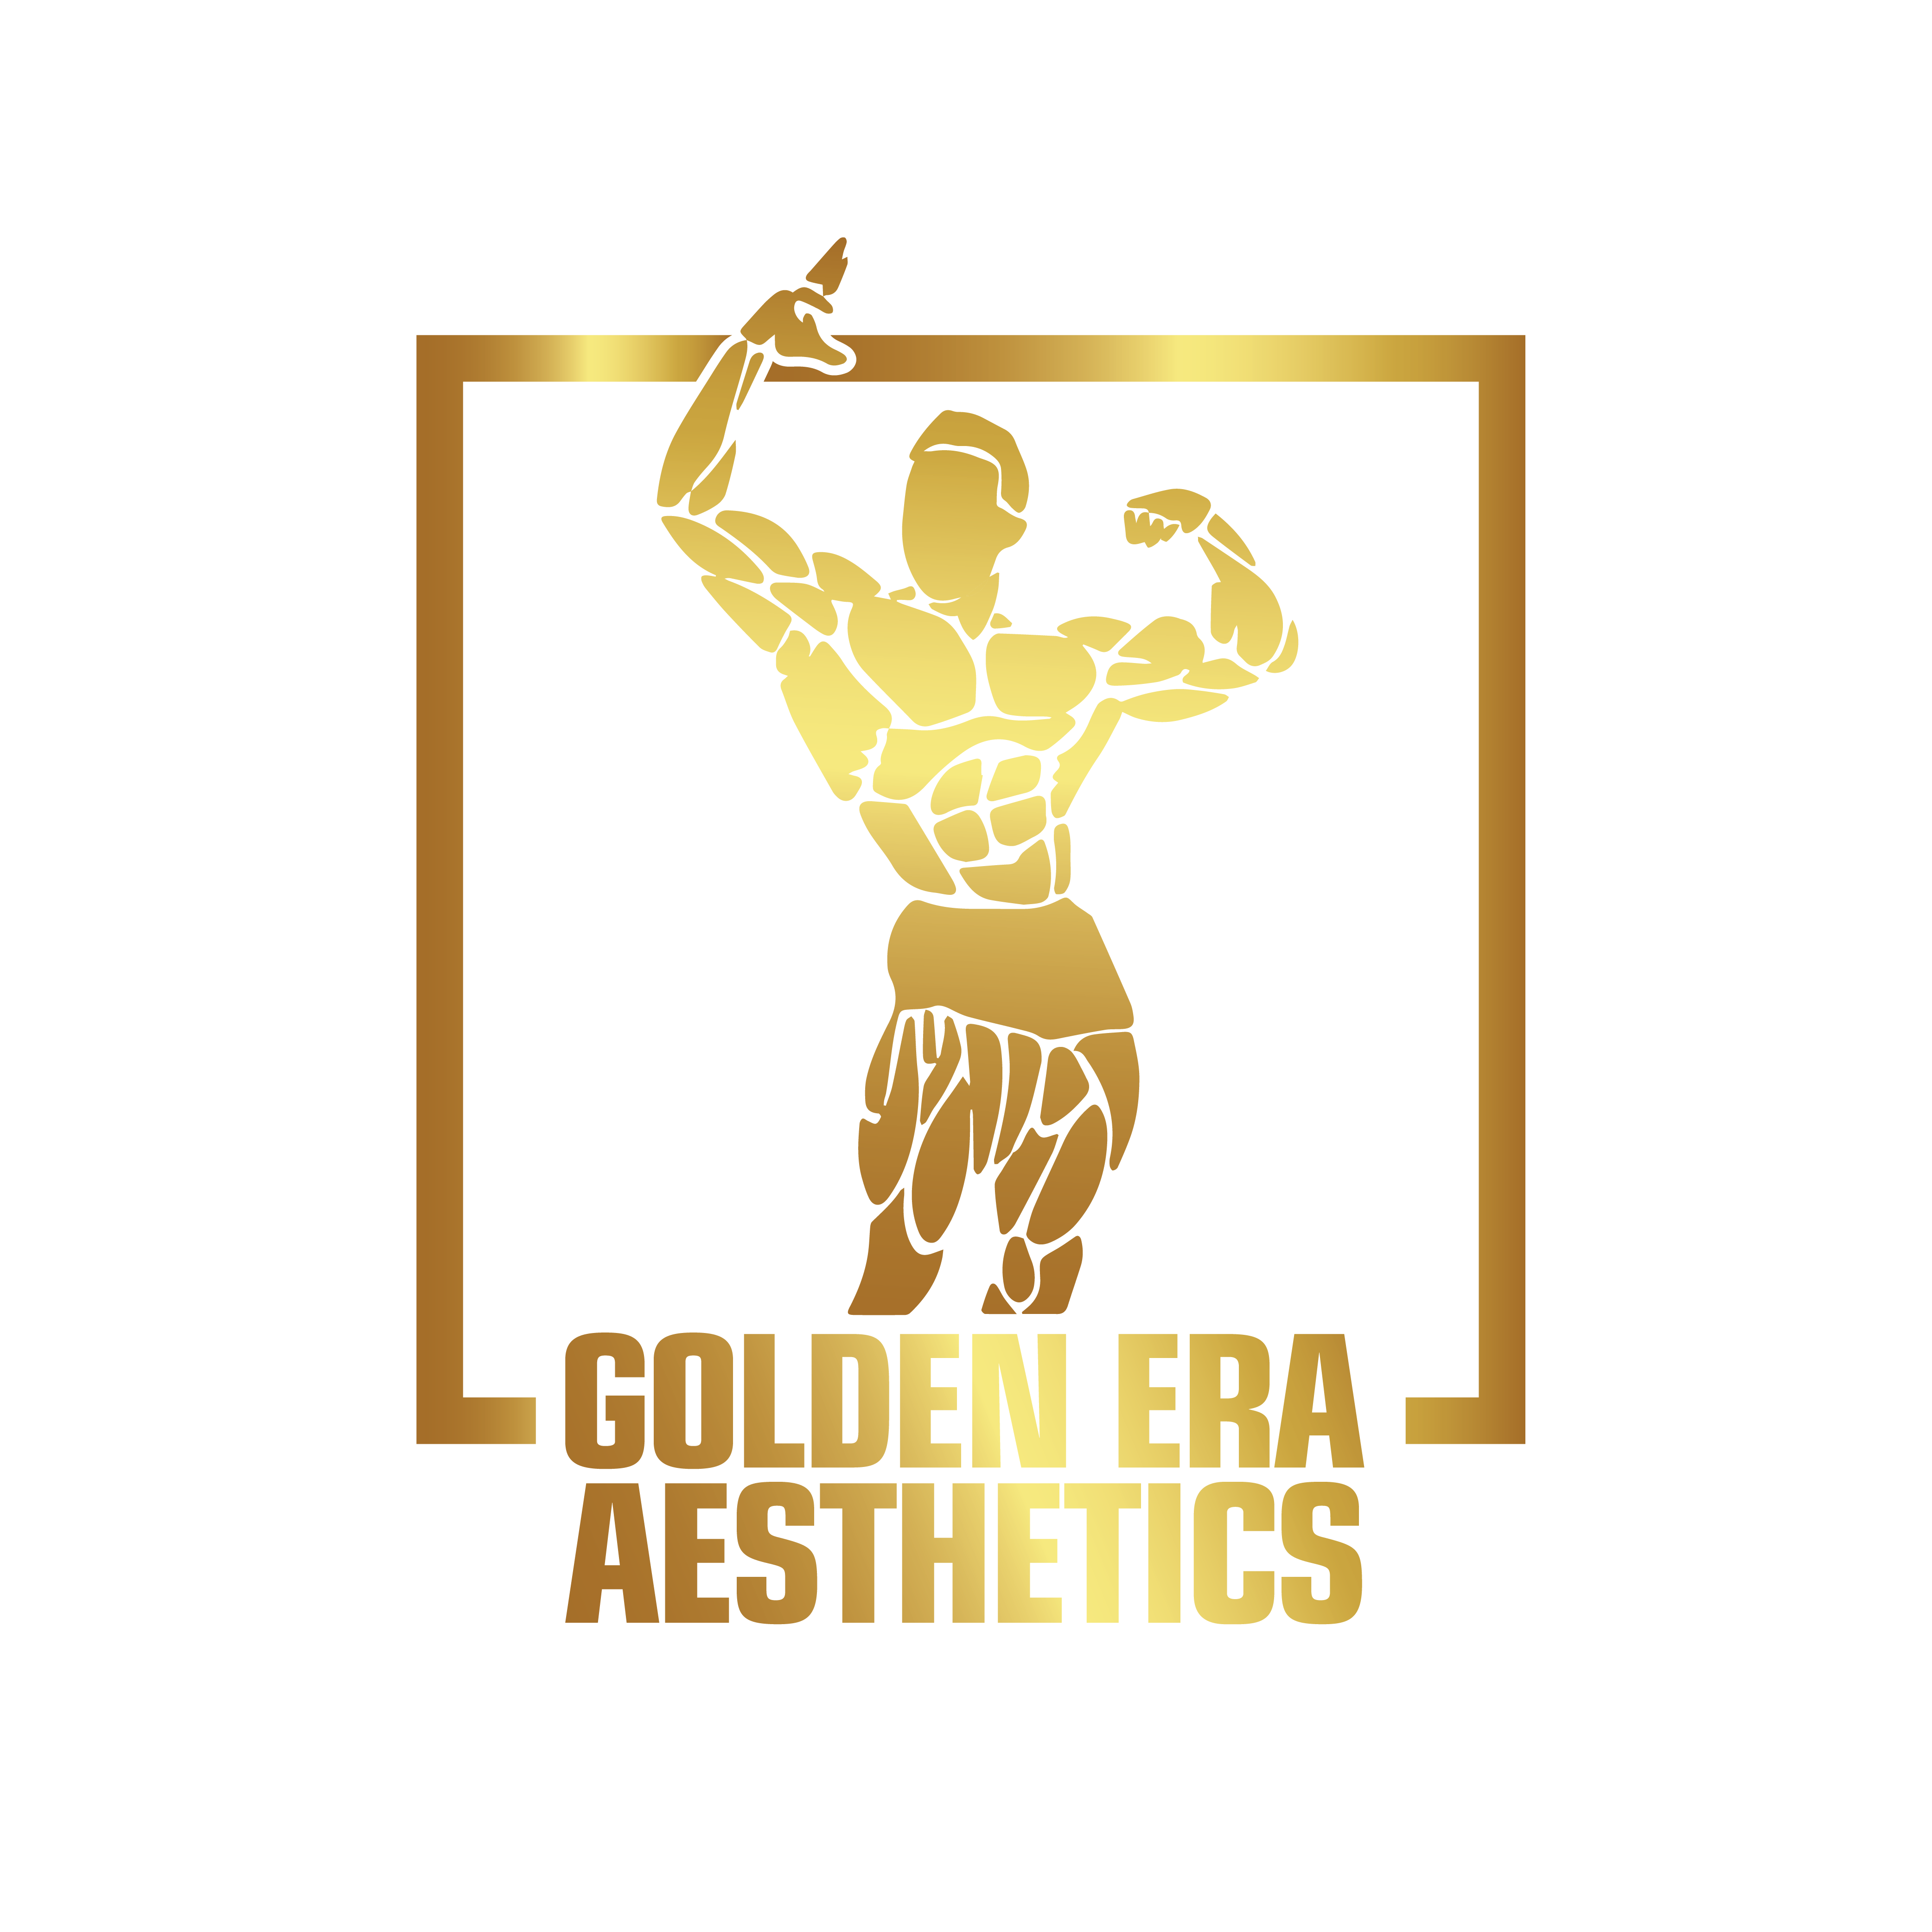 GOLDEN ERA AESTHETICS logo